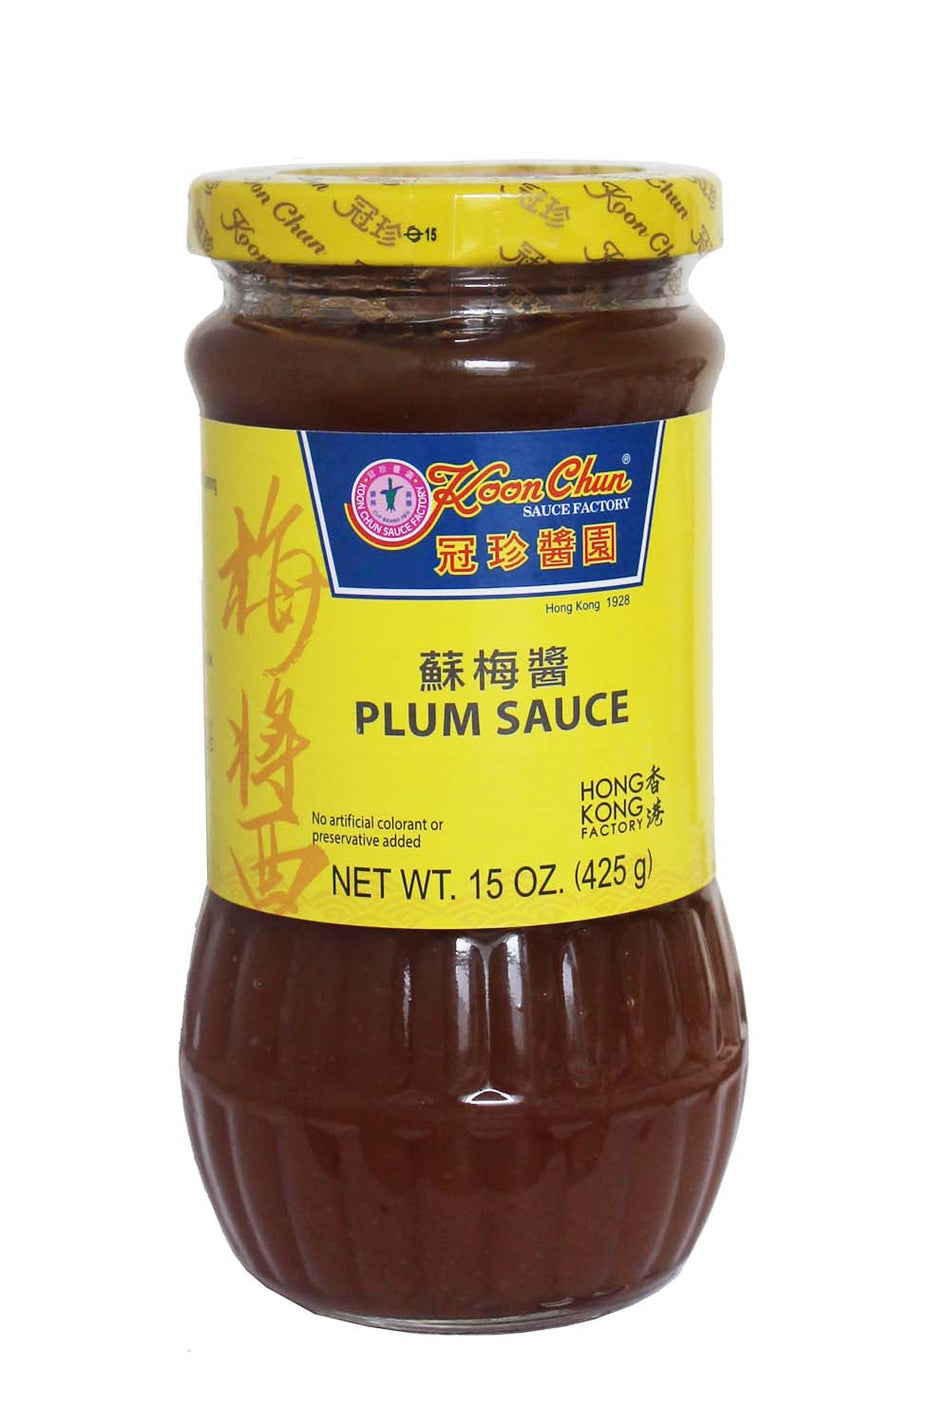 Koon Chu Plum Sauce